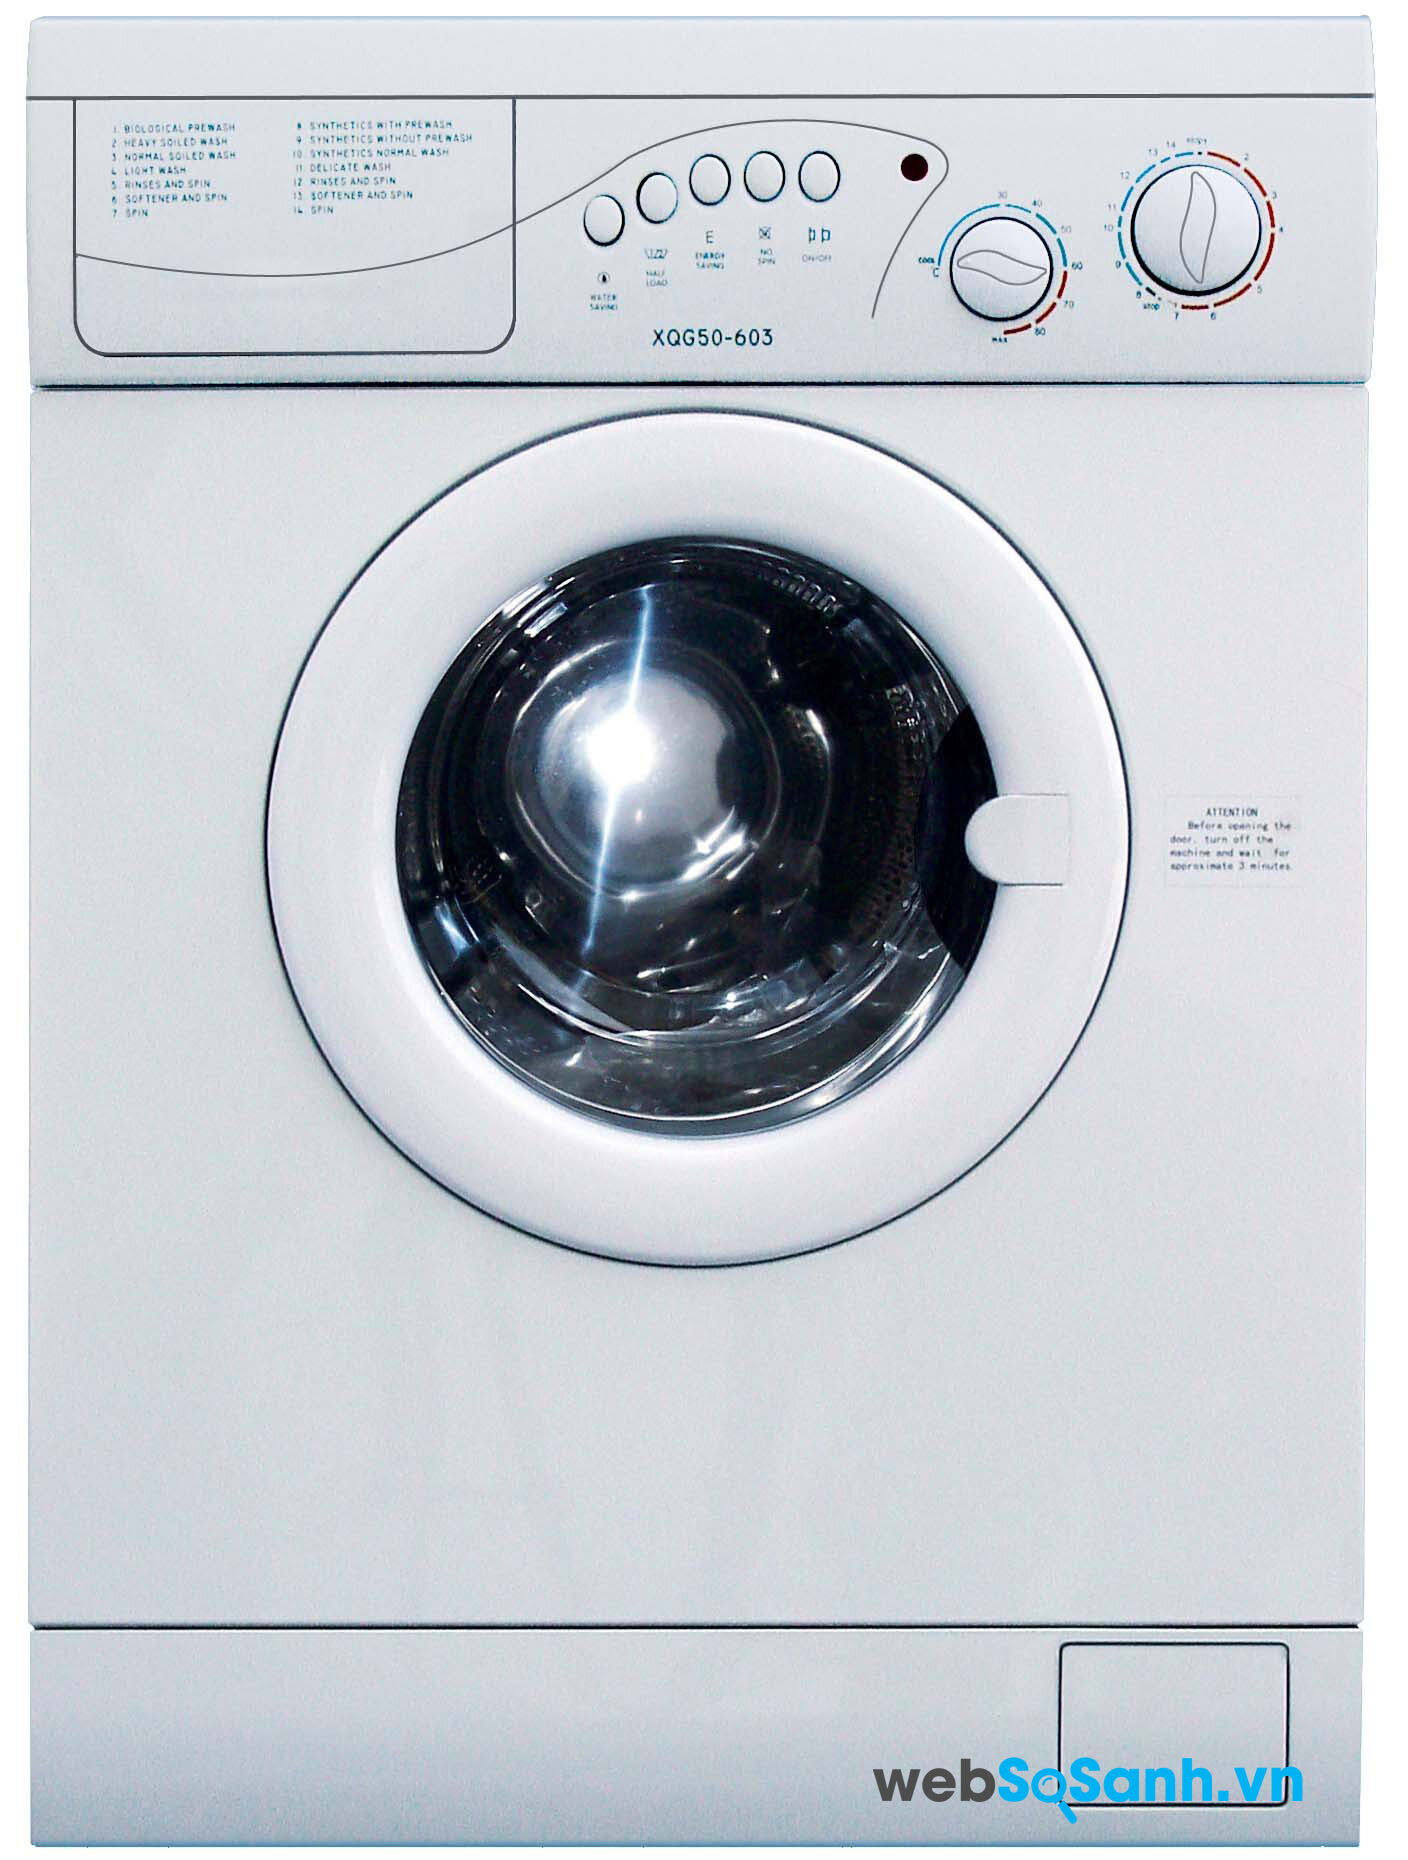 Máy giặt lồng ngang hoạt động rất êm ái và gân như không phát ra tiếng động